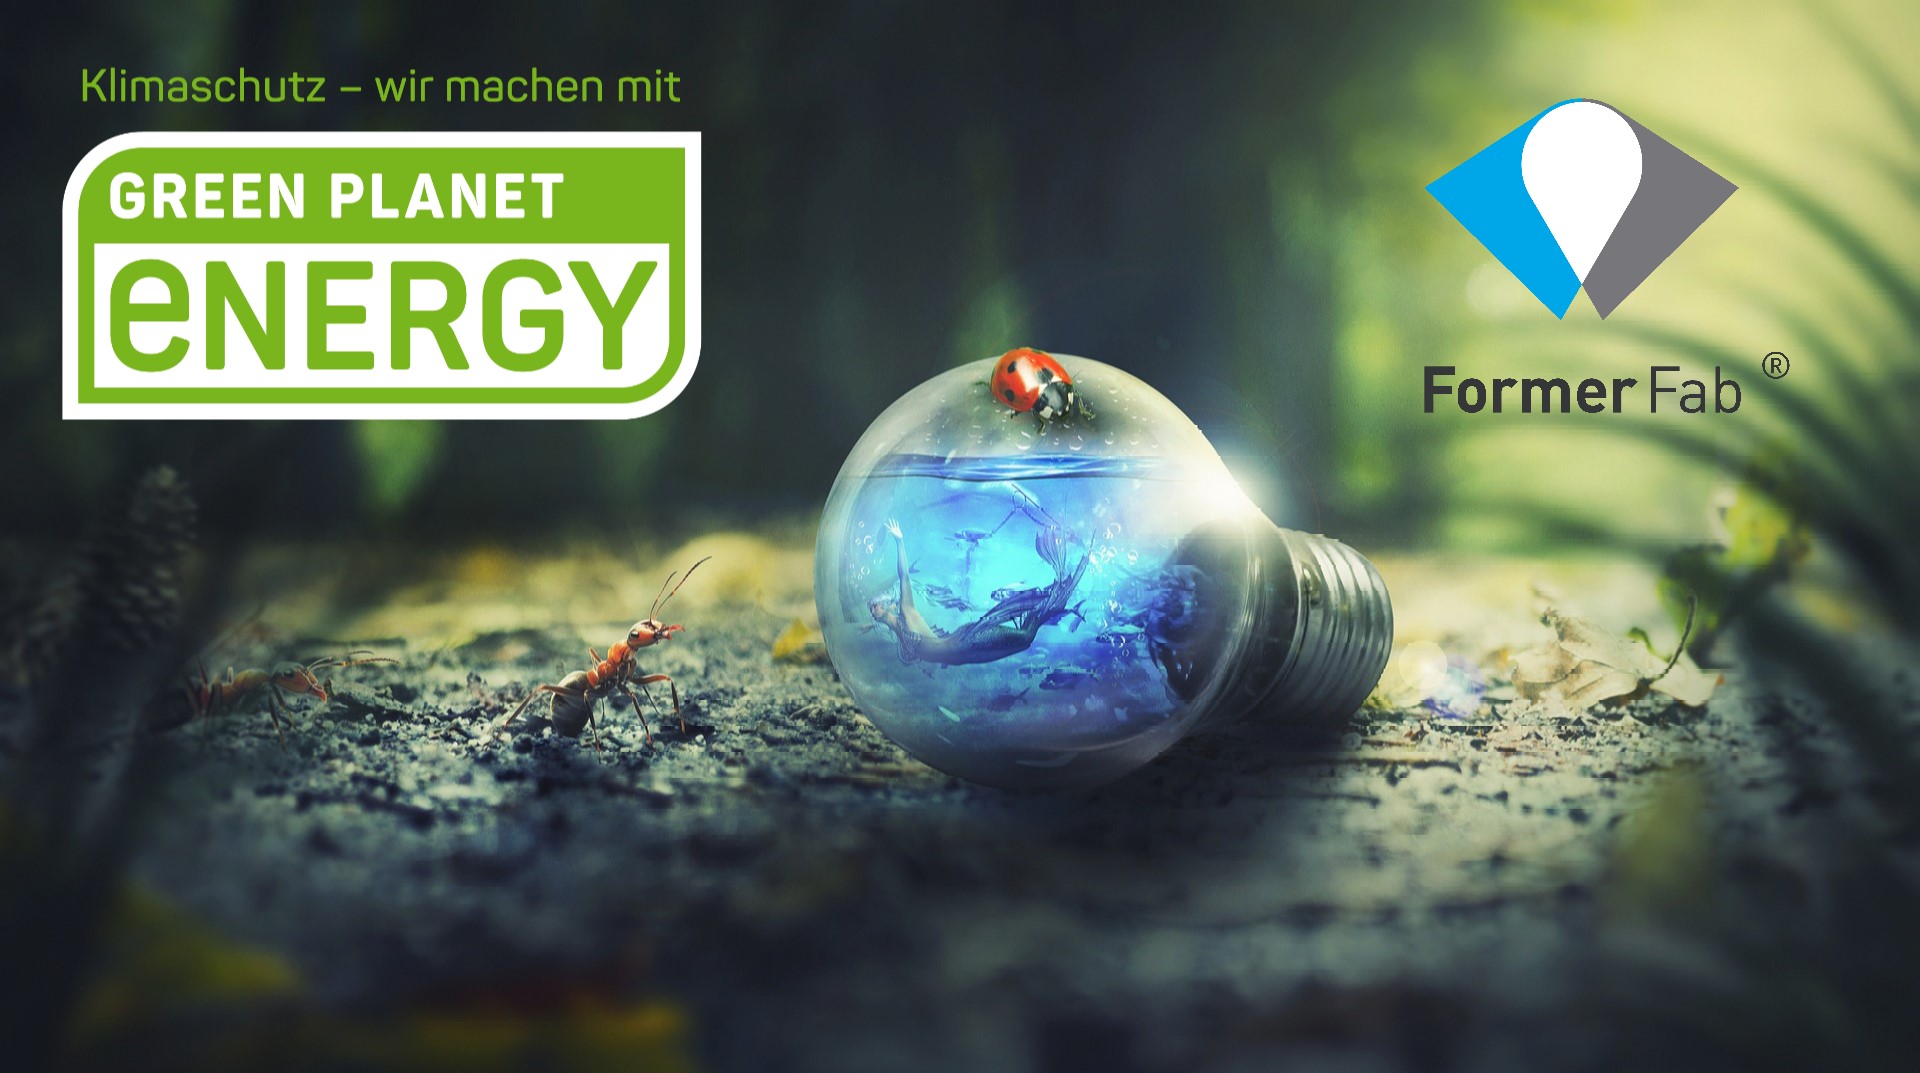 Green Planet Energy - Formerfab jetzt mit 100%Ökostrom